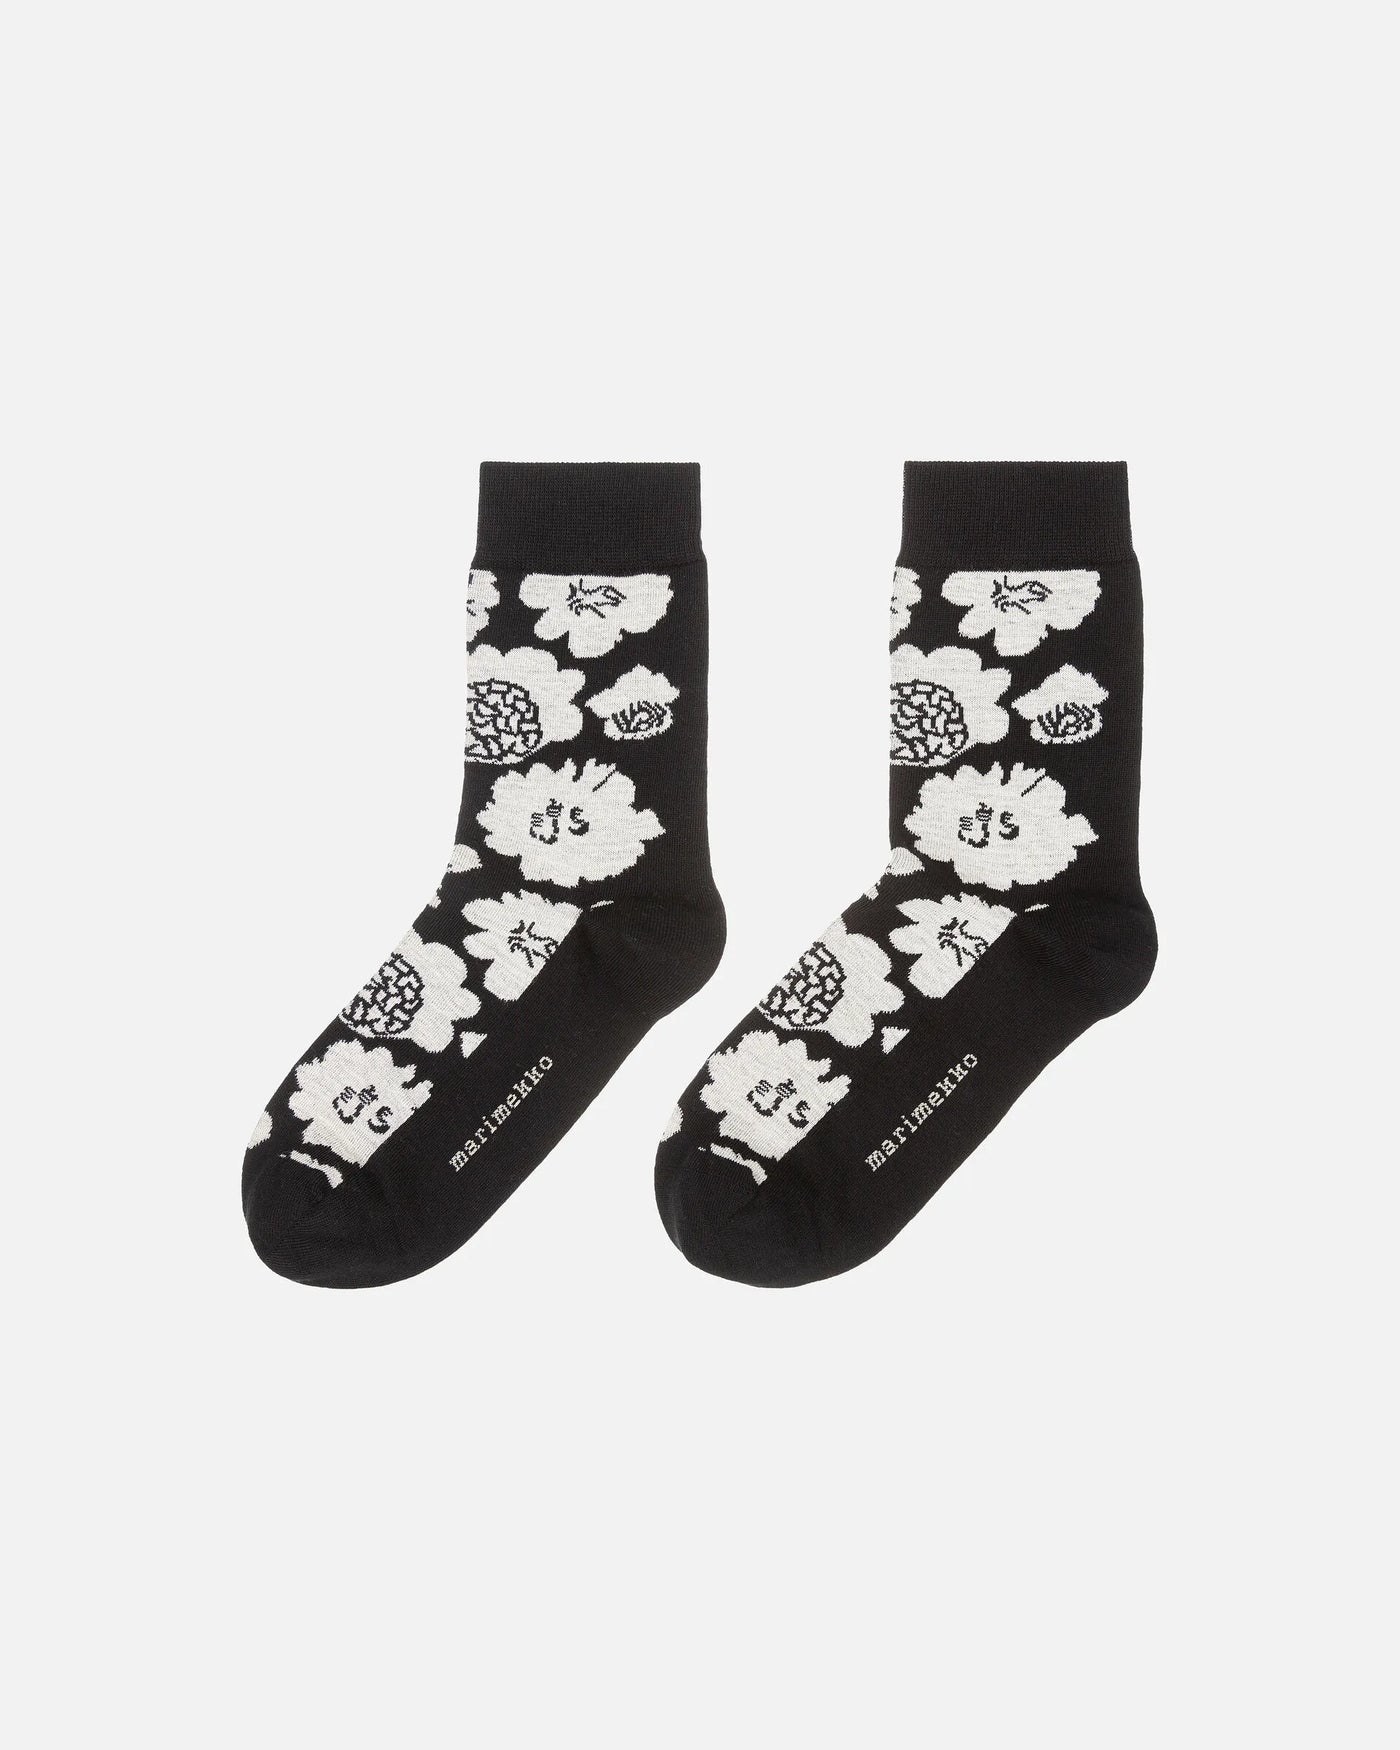 Kasvaa Pioni Socks, Black/Off White